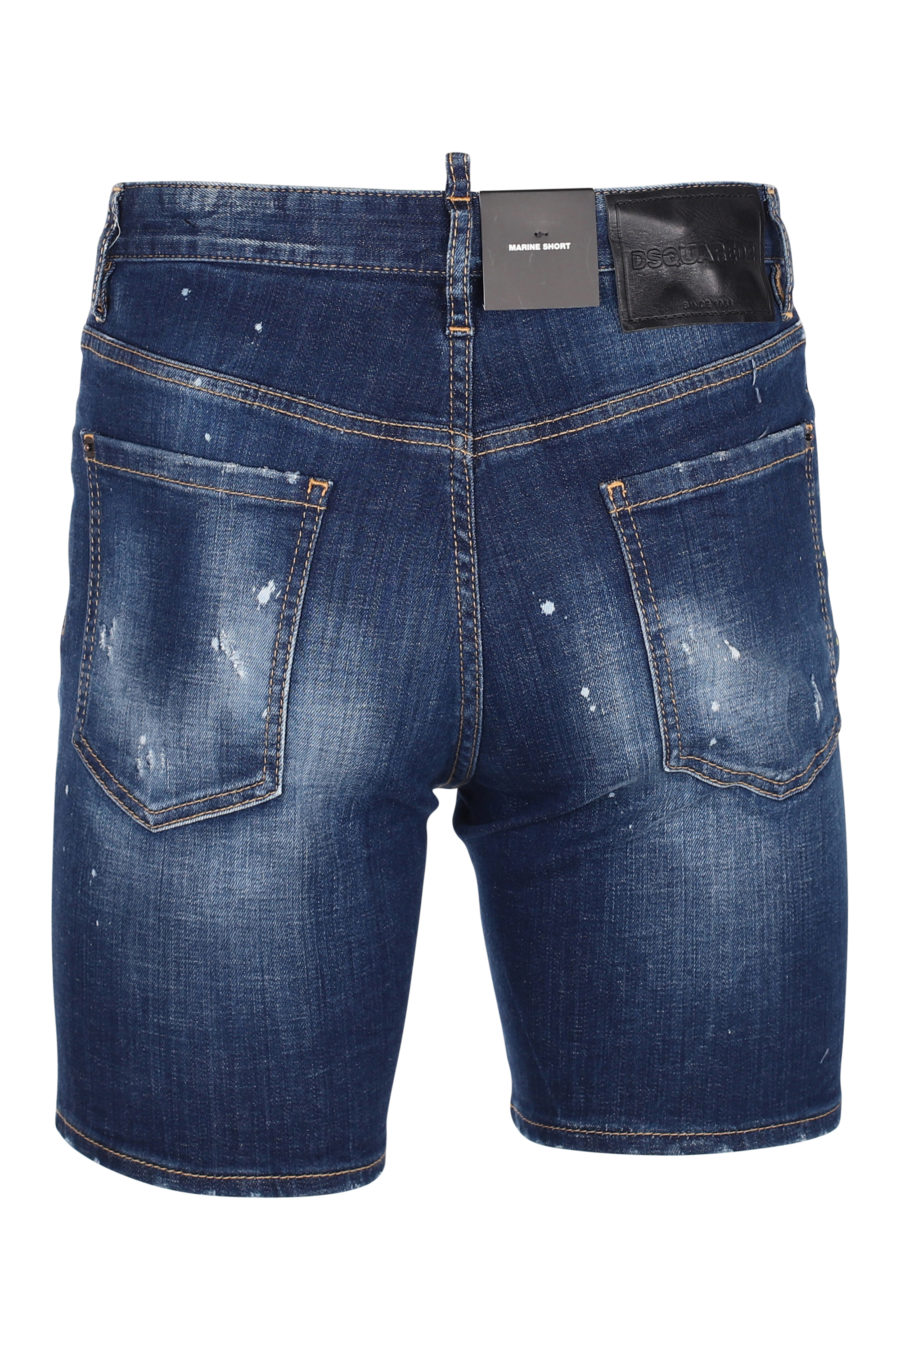 Pantalón corto con logo "icon splash" vertical - IMG 9799